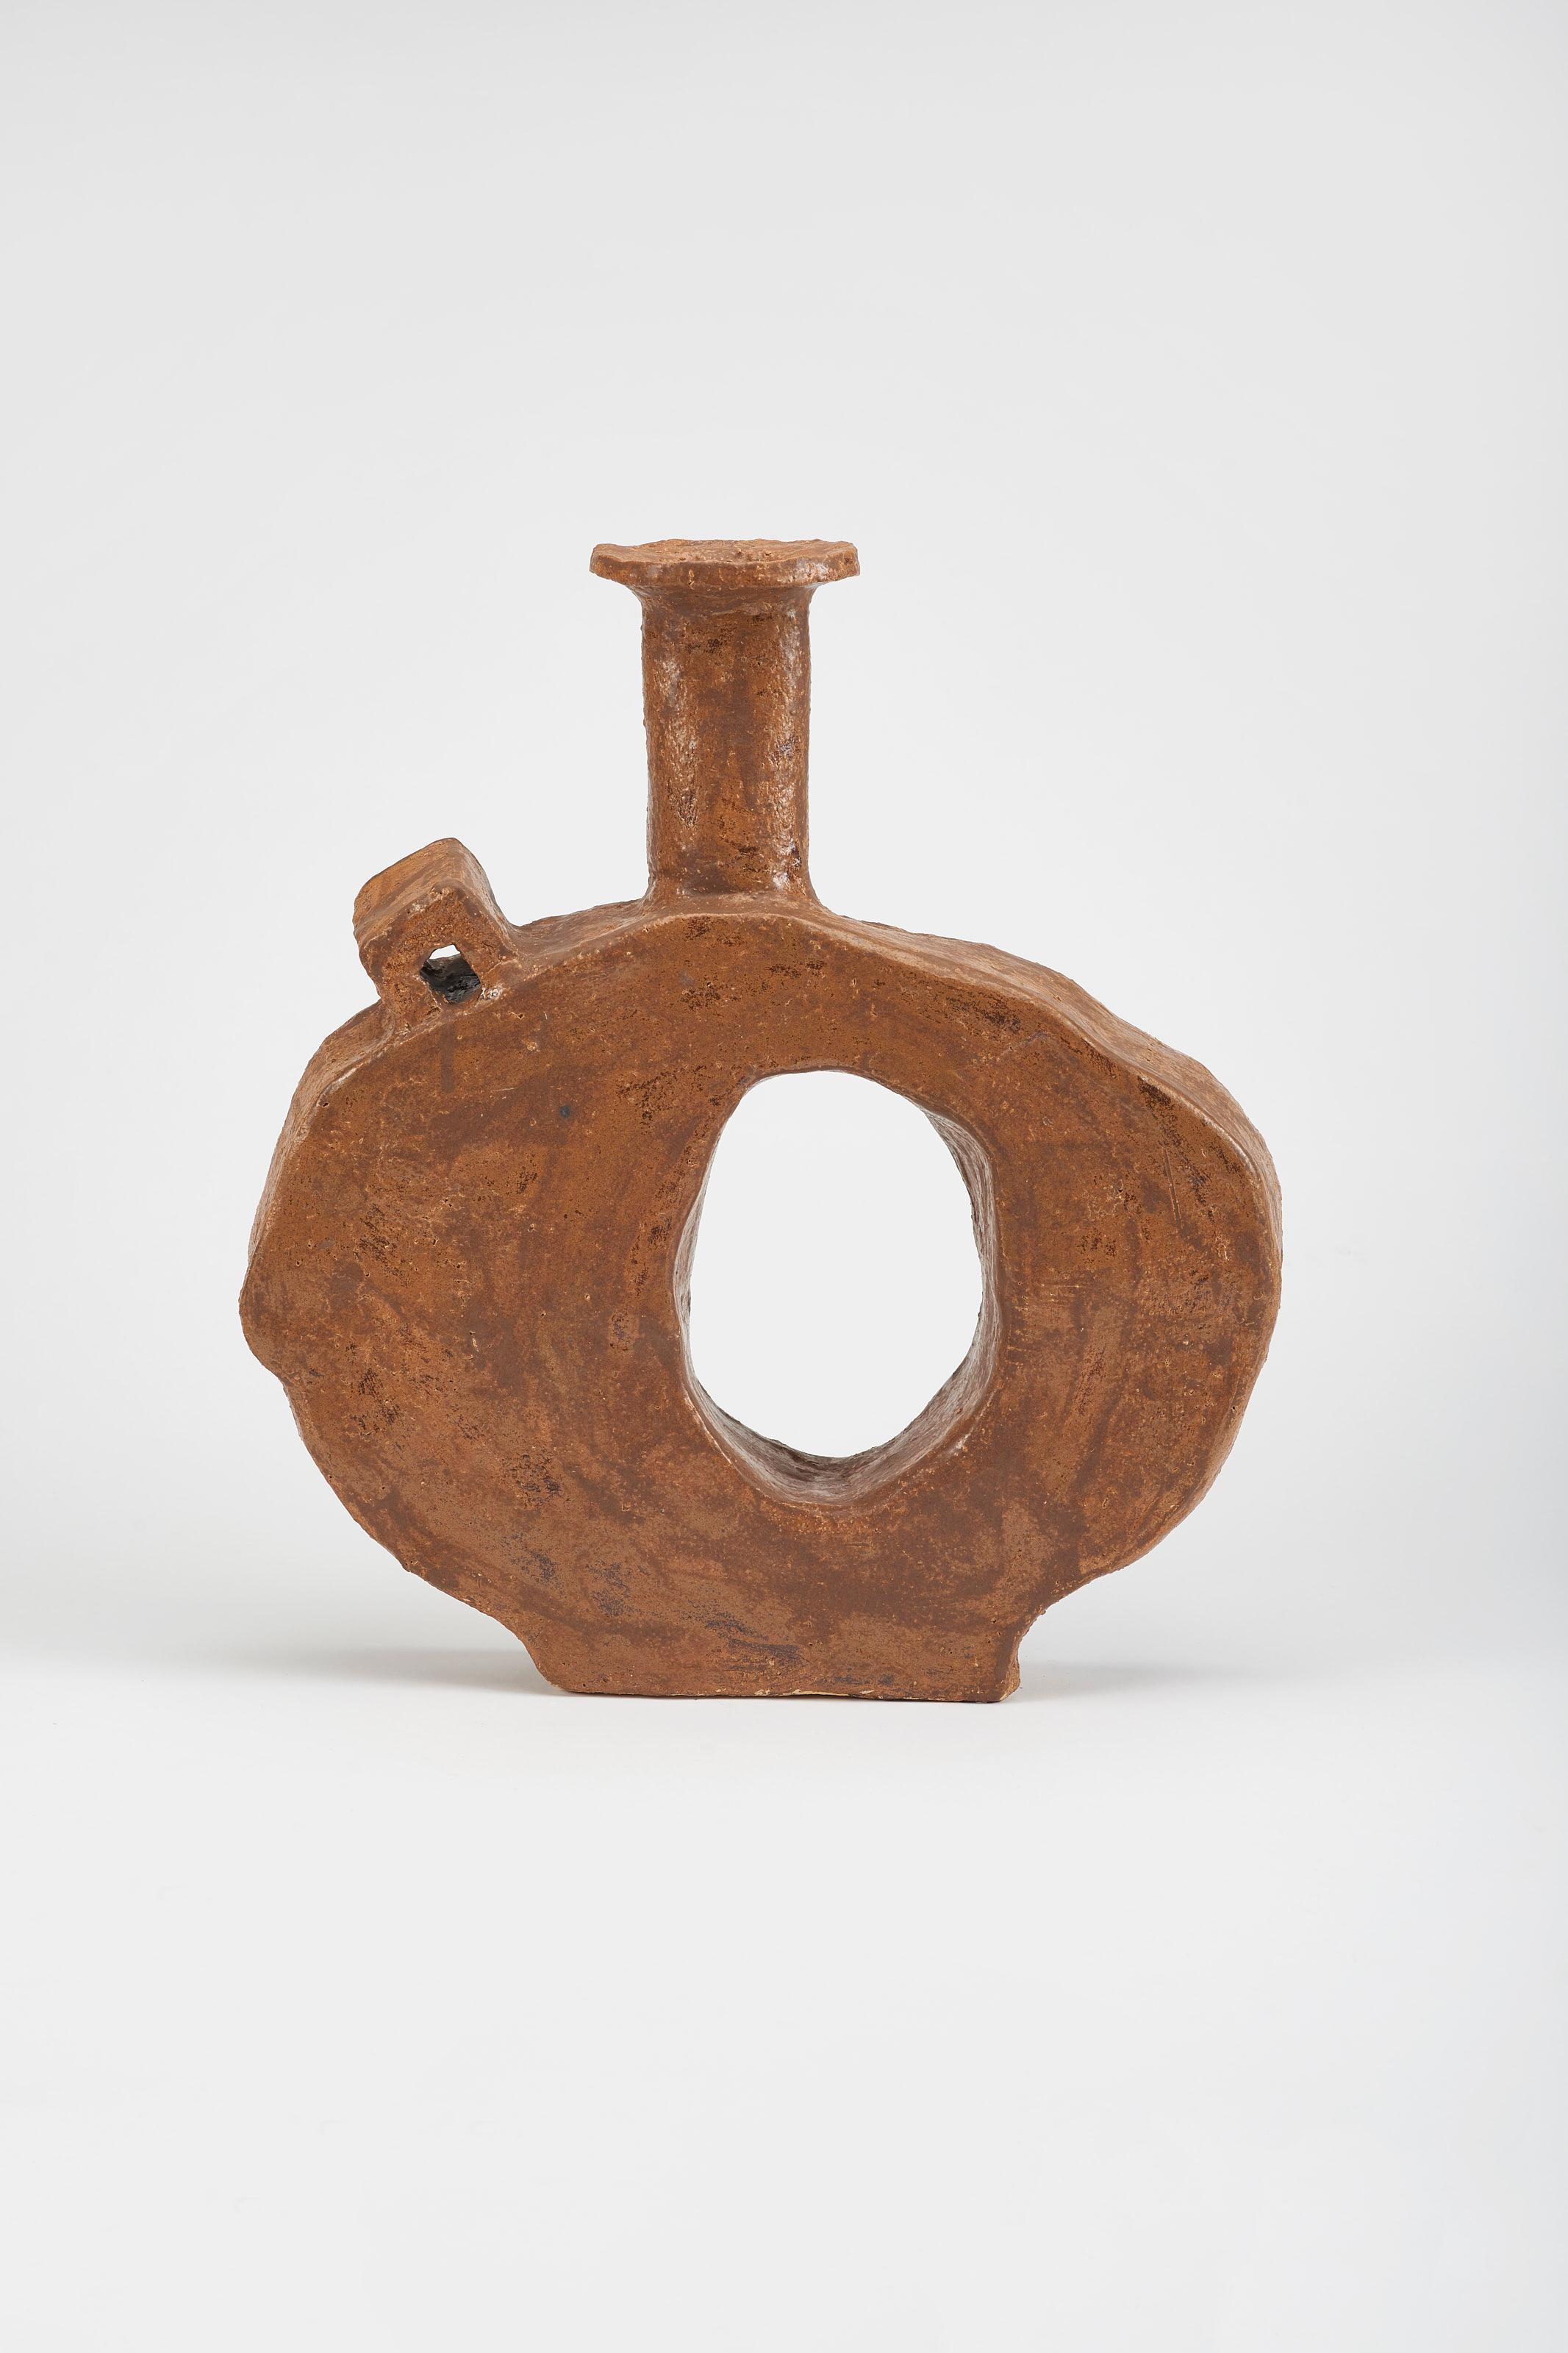 Tuja Big Vase von Willem Van Hooff.
Abmessungen: B 48 x T 10 x H 50 cm (Die Abmessungen können variieren, da es sich um handgefertigte Stücke handelt, die leichte Größenabweichungen aufweisen können)
MATERIAL: Glasierte Keramik.

Der Kern besteht